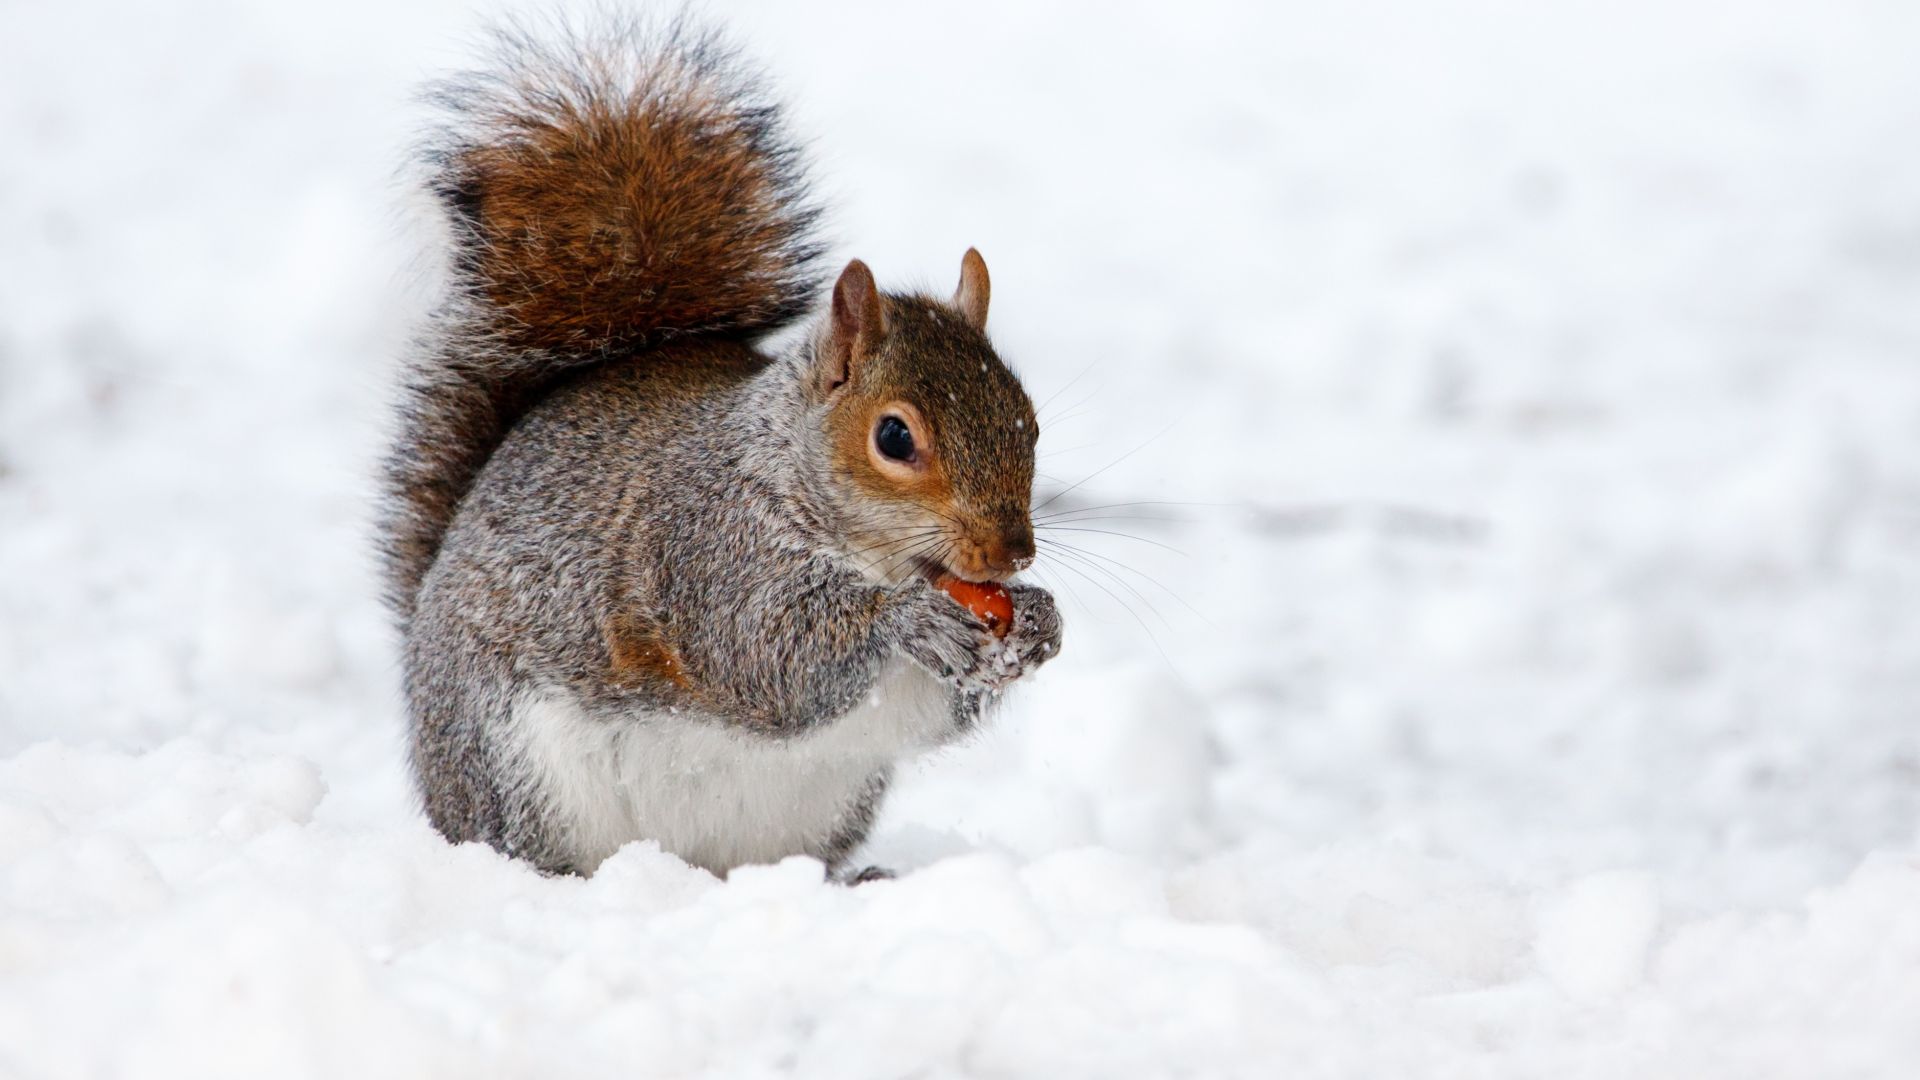 белка, зима, squirrel, cute animals, snow, winter, 4k (horizontal)